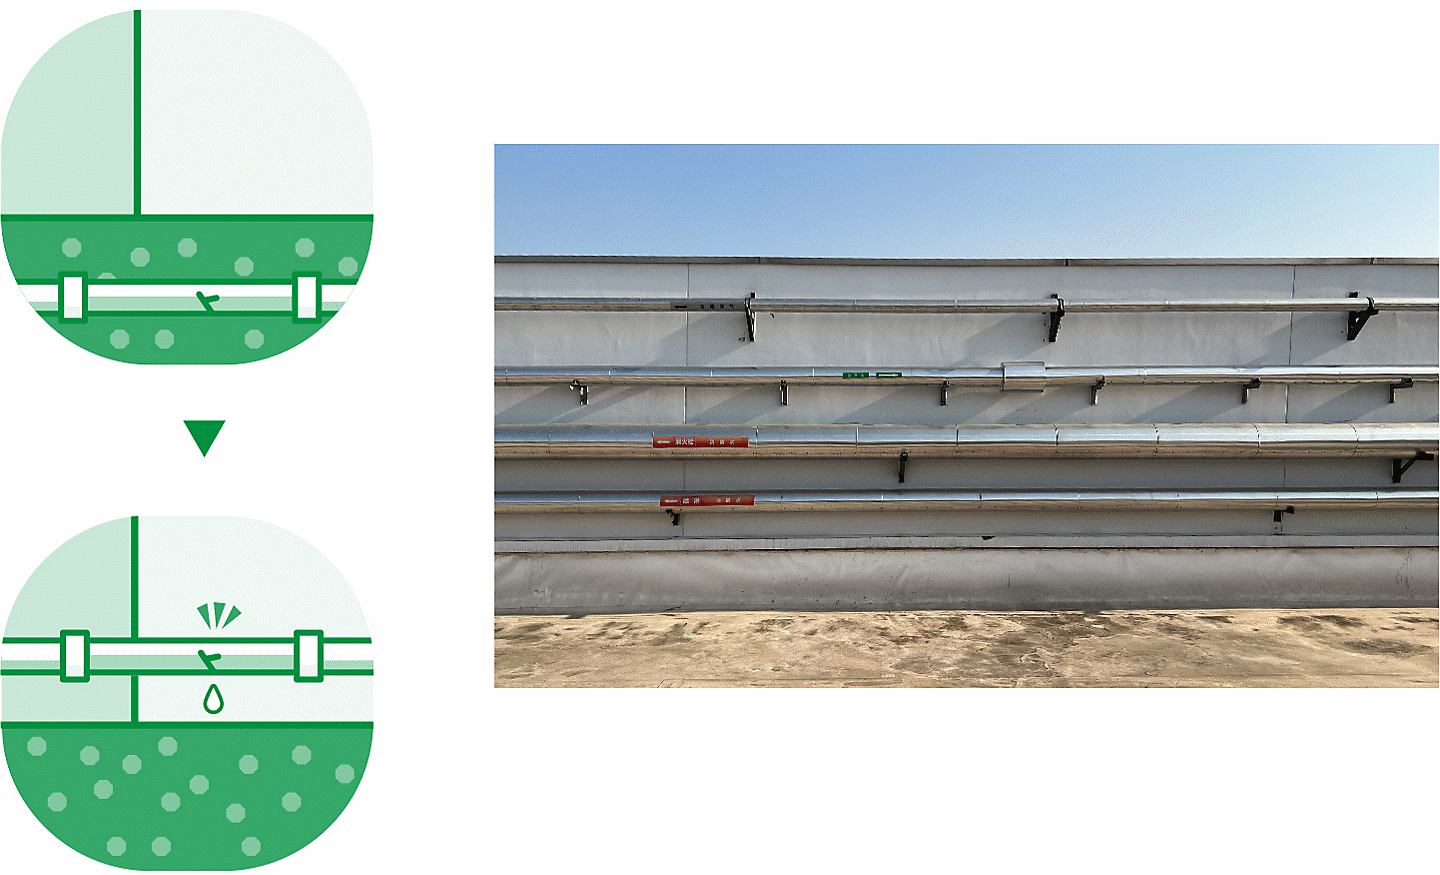 Schéma à gauche (L) et photo (R) représentant le déterrement des conduites d'eau afin de simplifier la réparation des fuites, et photo d'une conduite d'eau à droite.